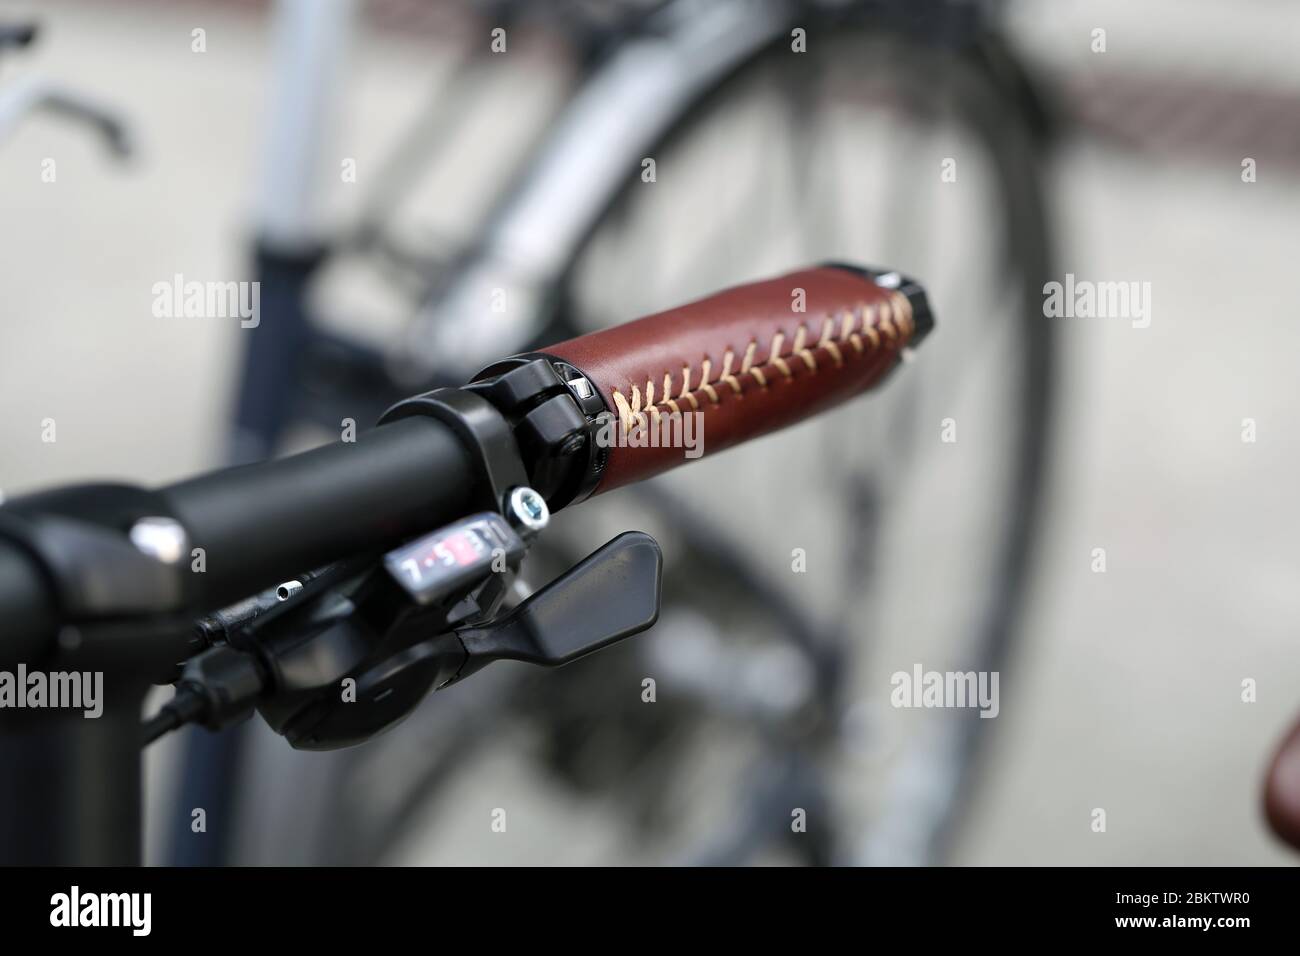 Immagine a colori di primo piano del manubrio della bicicletta con dettagli in pelle marrone e campanello nero, Baden, Svizzera, marzo 2020. Le biciclette sono un ottimo esercizio fisico. Foto Stock